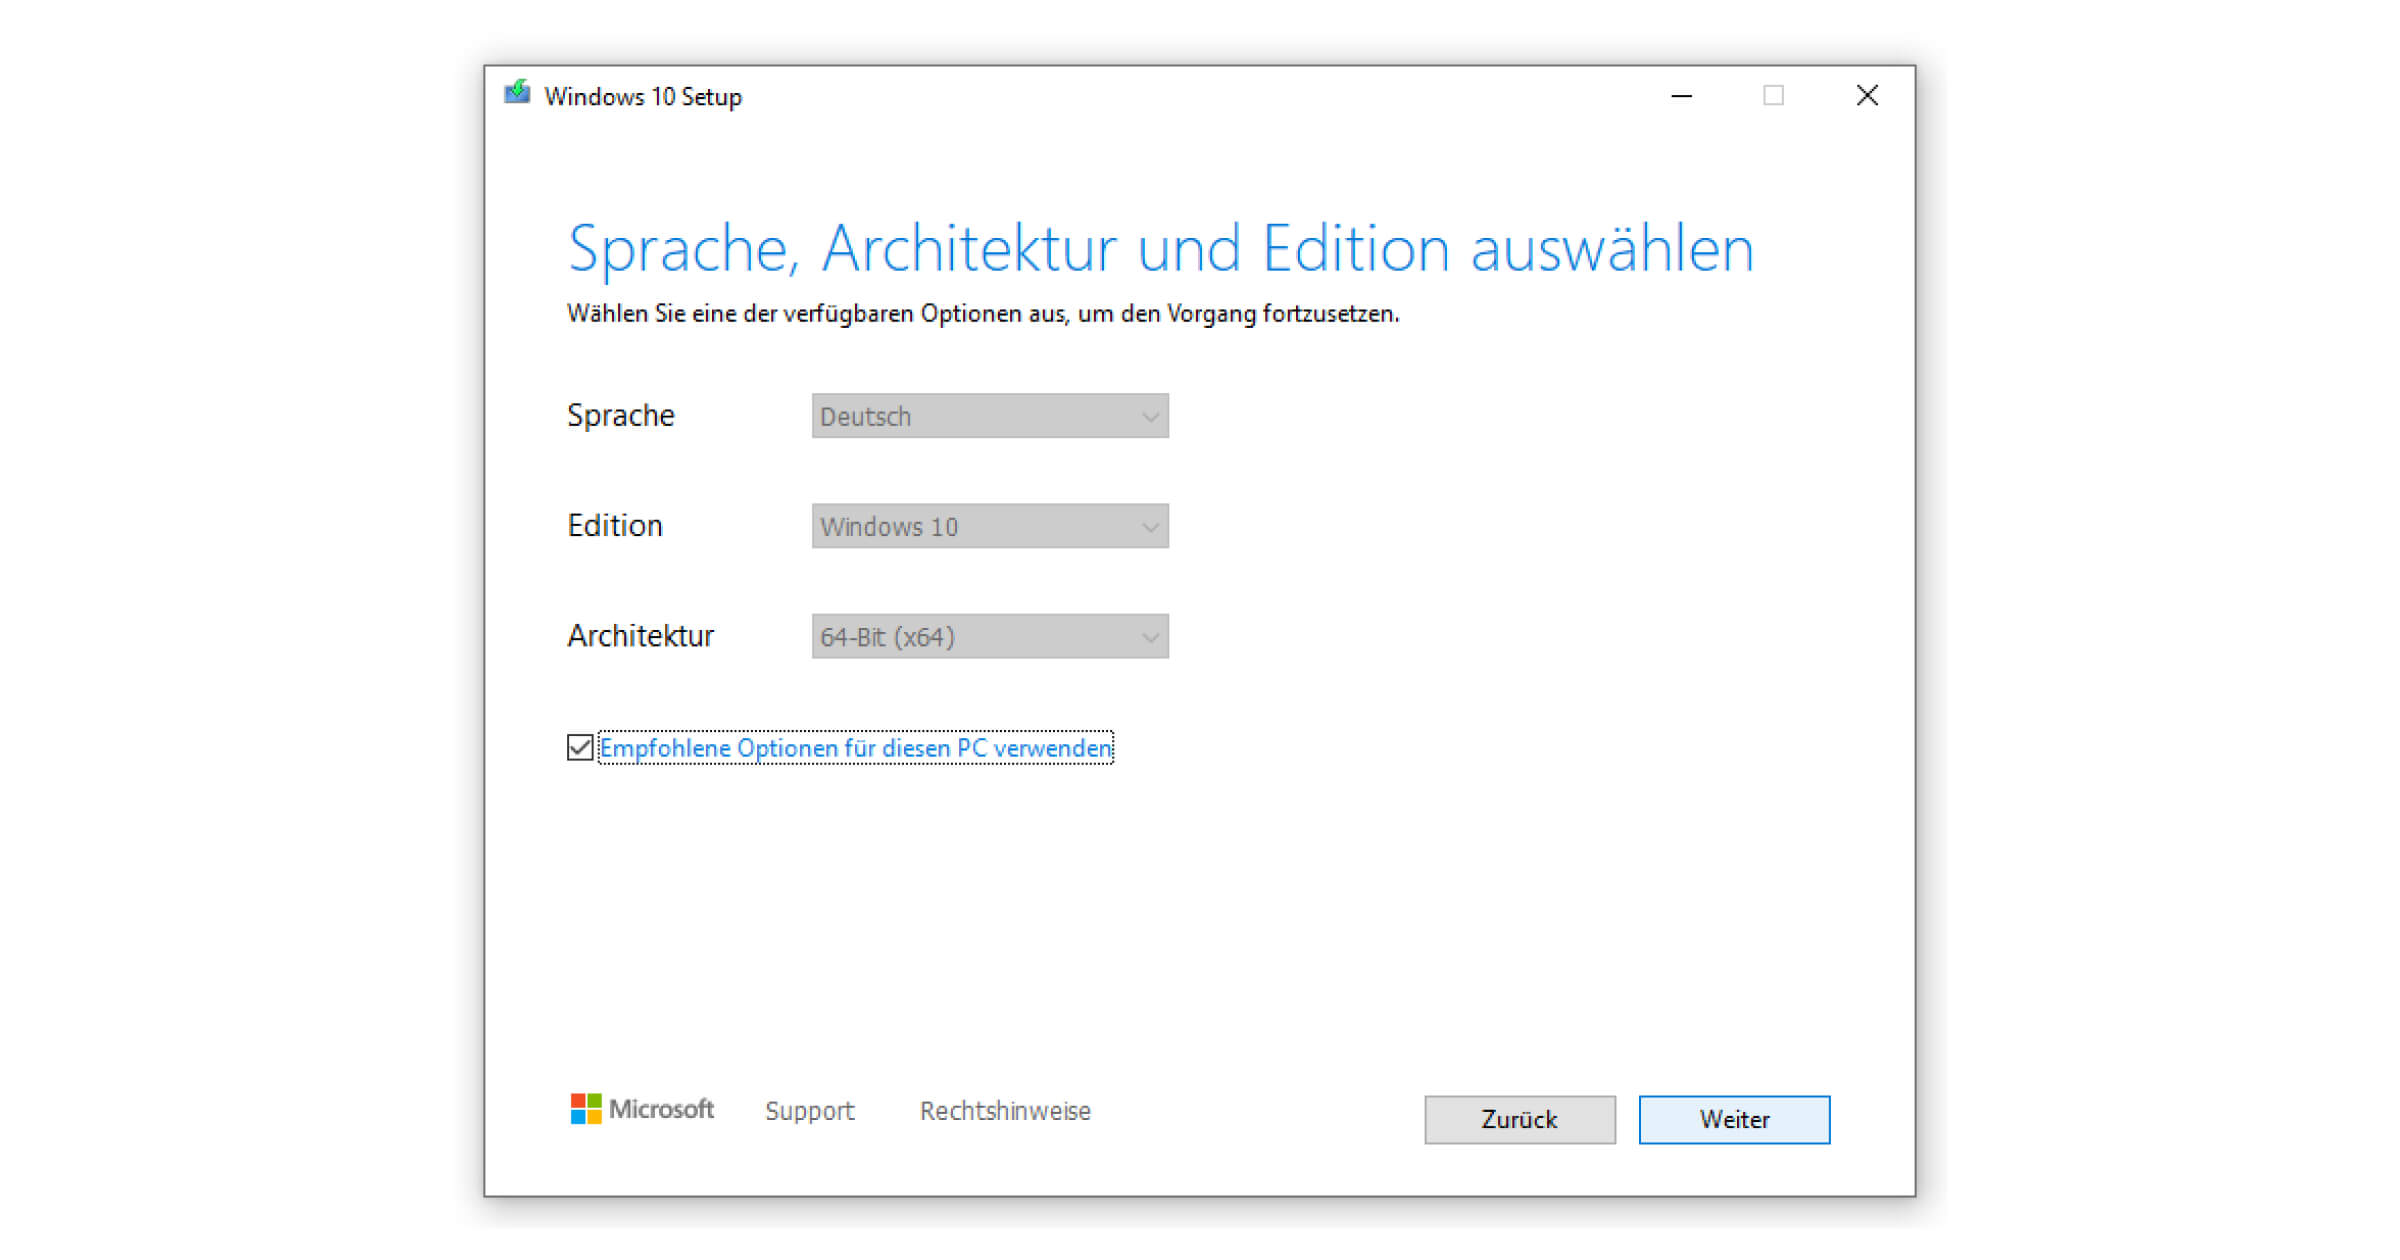 Windows 7 auf Windows 10 upgraden und Sprache, Architektur plus Edition festlegen